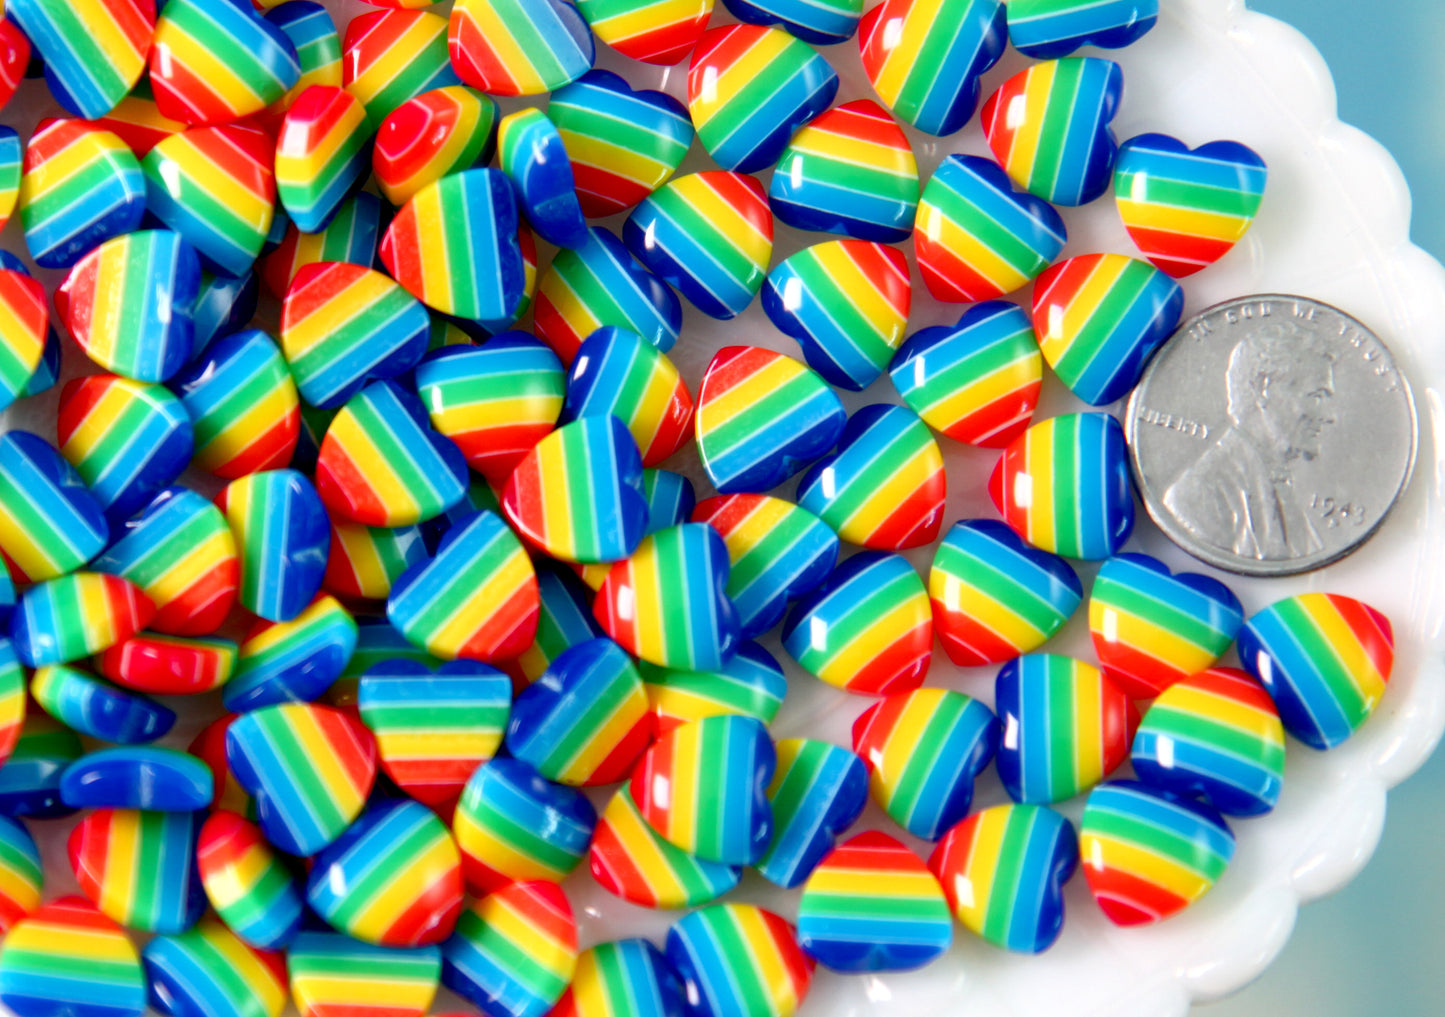 Tiny Rainbow Hearts - 10mm Tiny Classic Rainbow Striped Hearts Resin Flatback Cabochons - 12 pc set